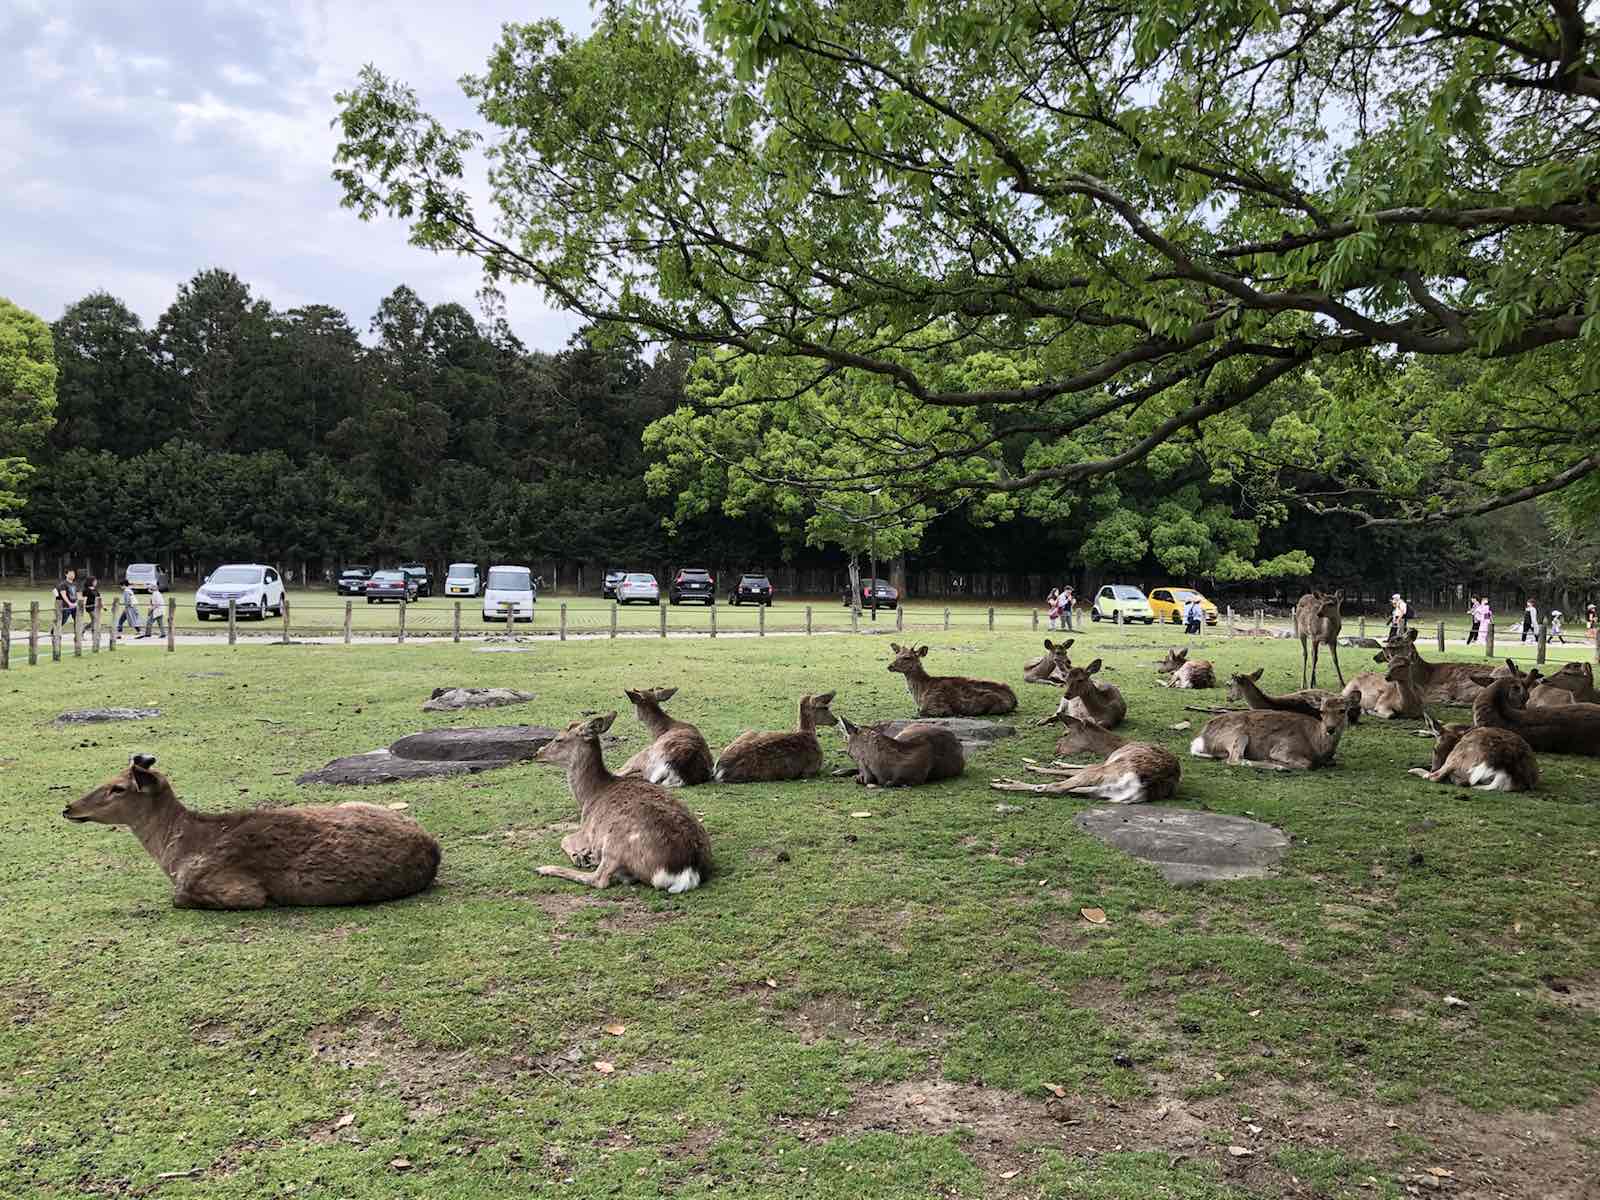 到奈良最重要的就是看小鹿，公园环境也不错，如果樱花季应该会更美。想去喂